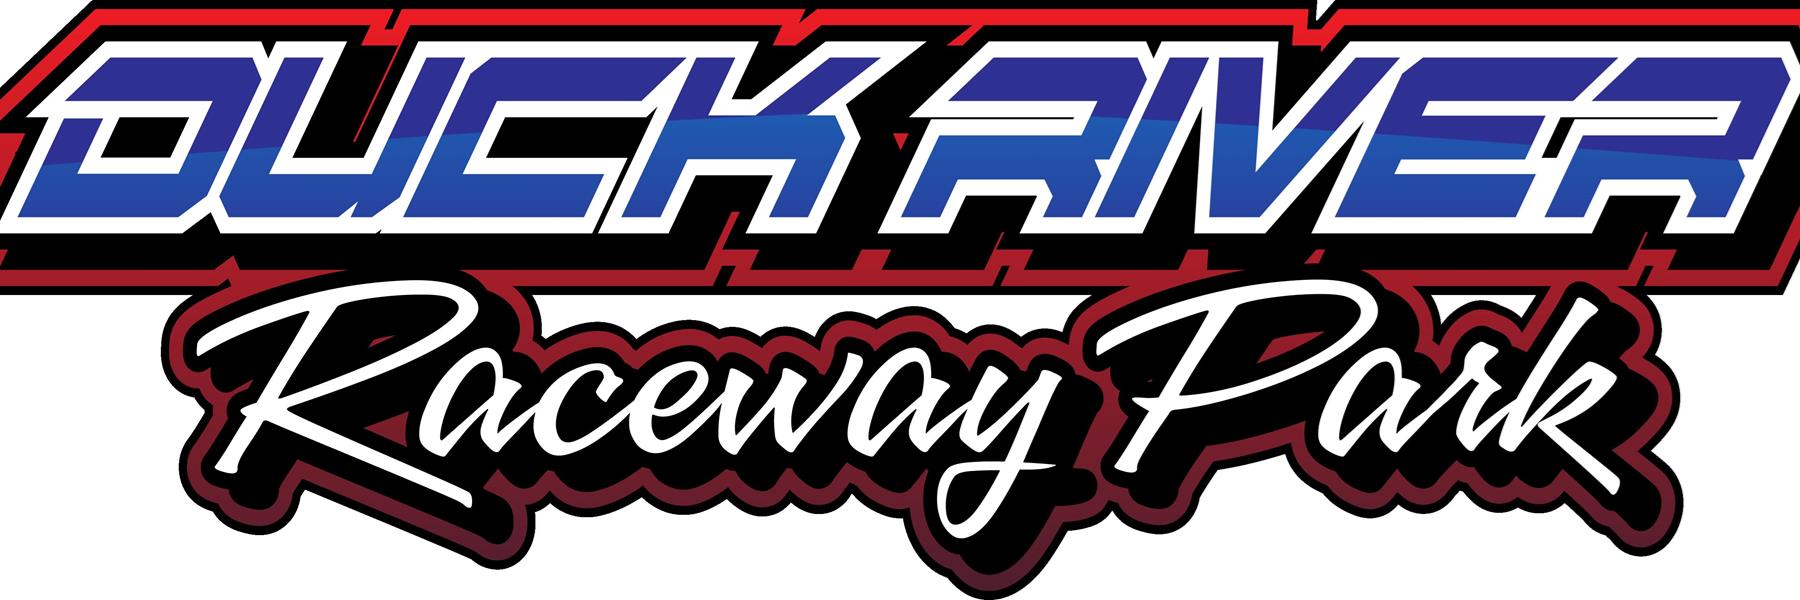 11/6/2022 - Duck River Raceway Park